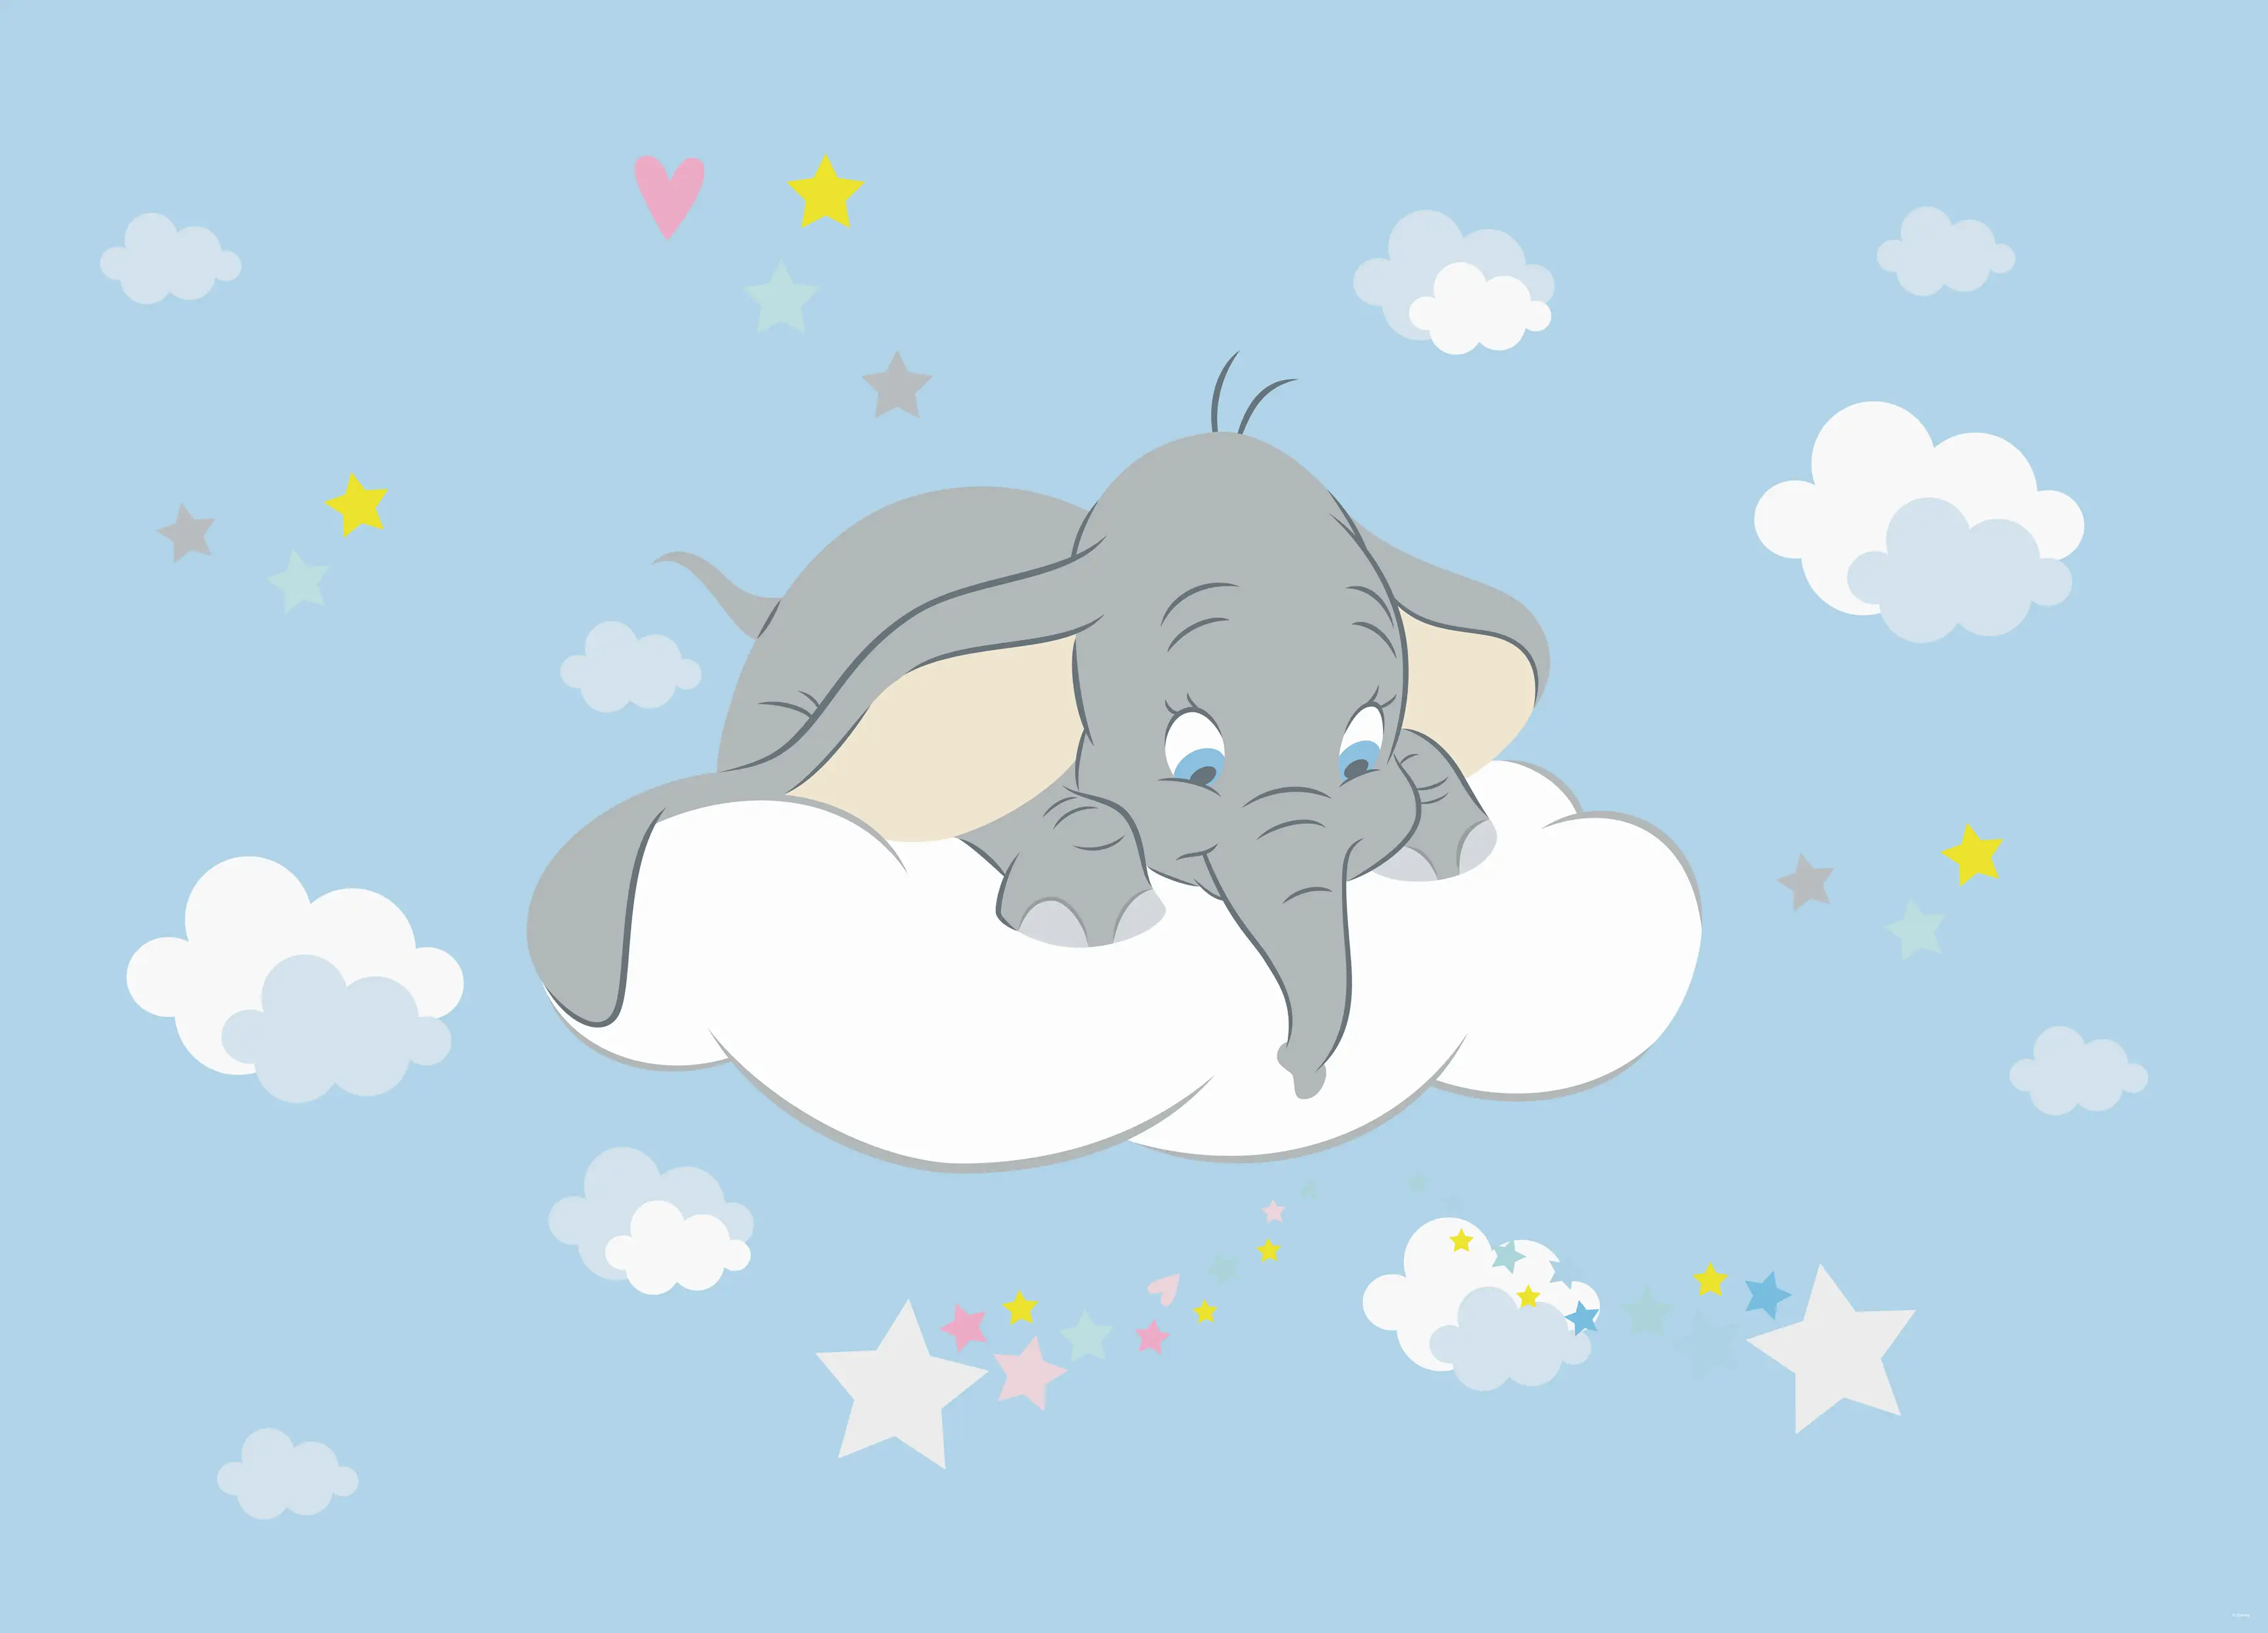 Poster Dumbo